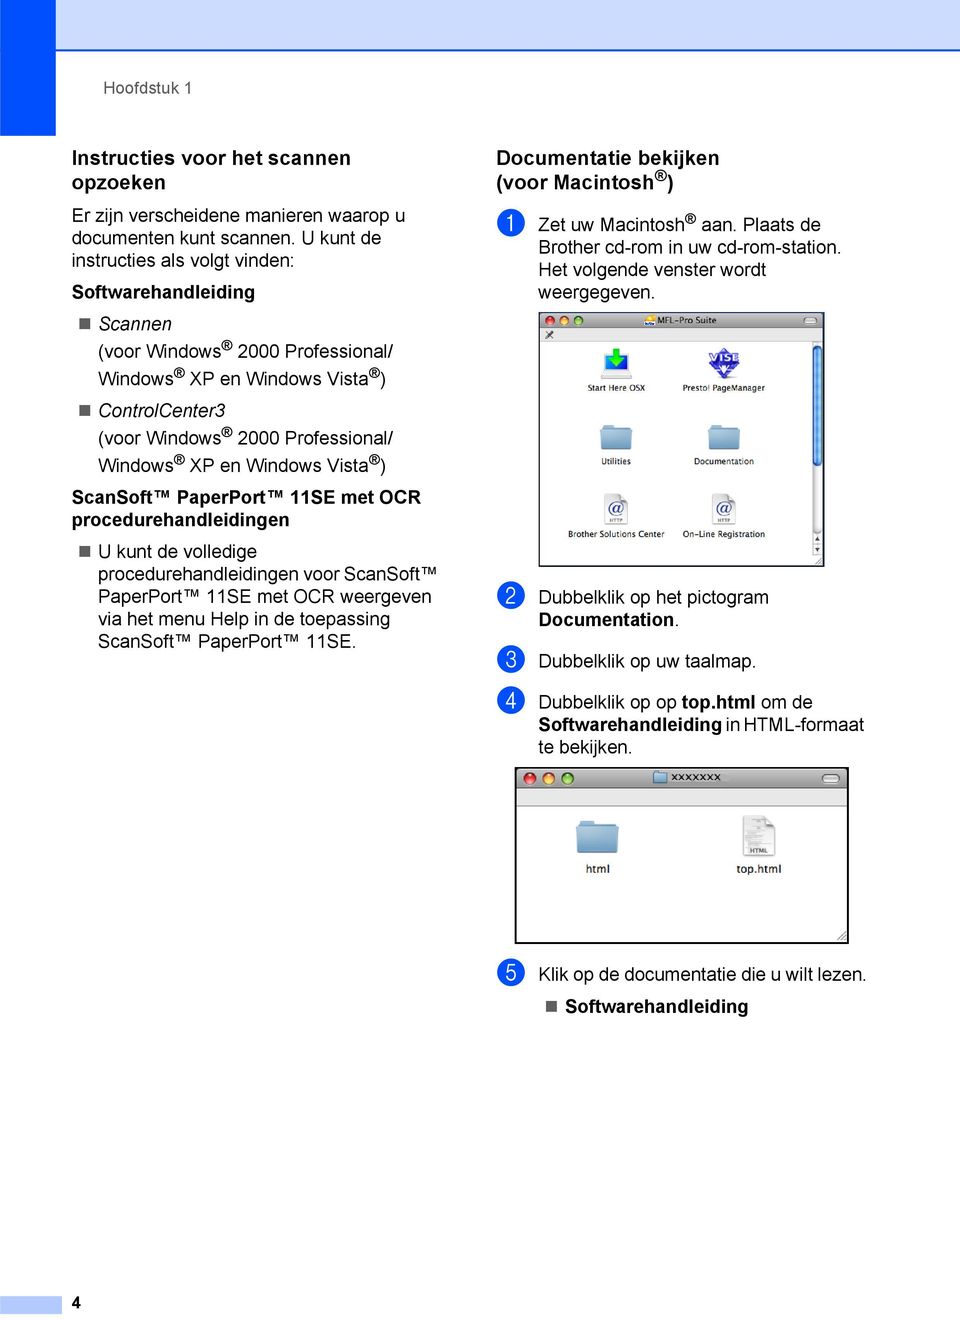 Windows Vista ) ScanSoft PaperPort 11SE met OCR procedurehandleidingen U kunt de volledige procedurehandleidingen voor ScanSoft PaperPort 11SE met OCR weergeven via het menu Help in de toepassing